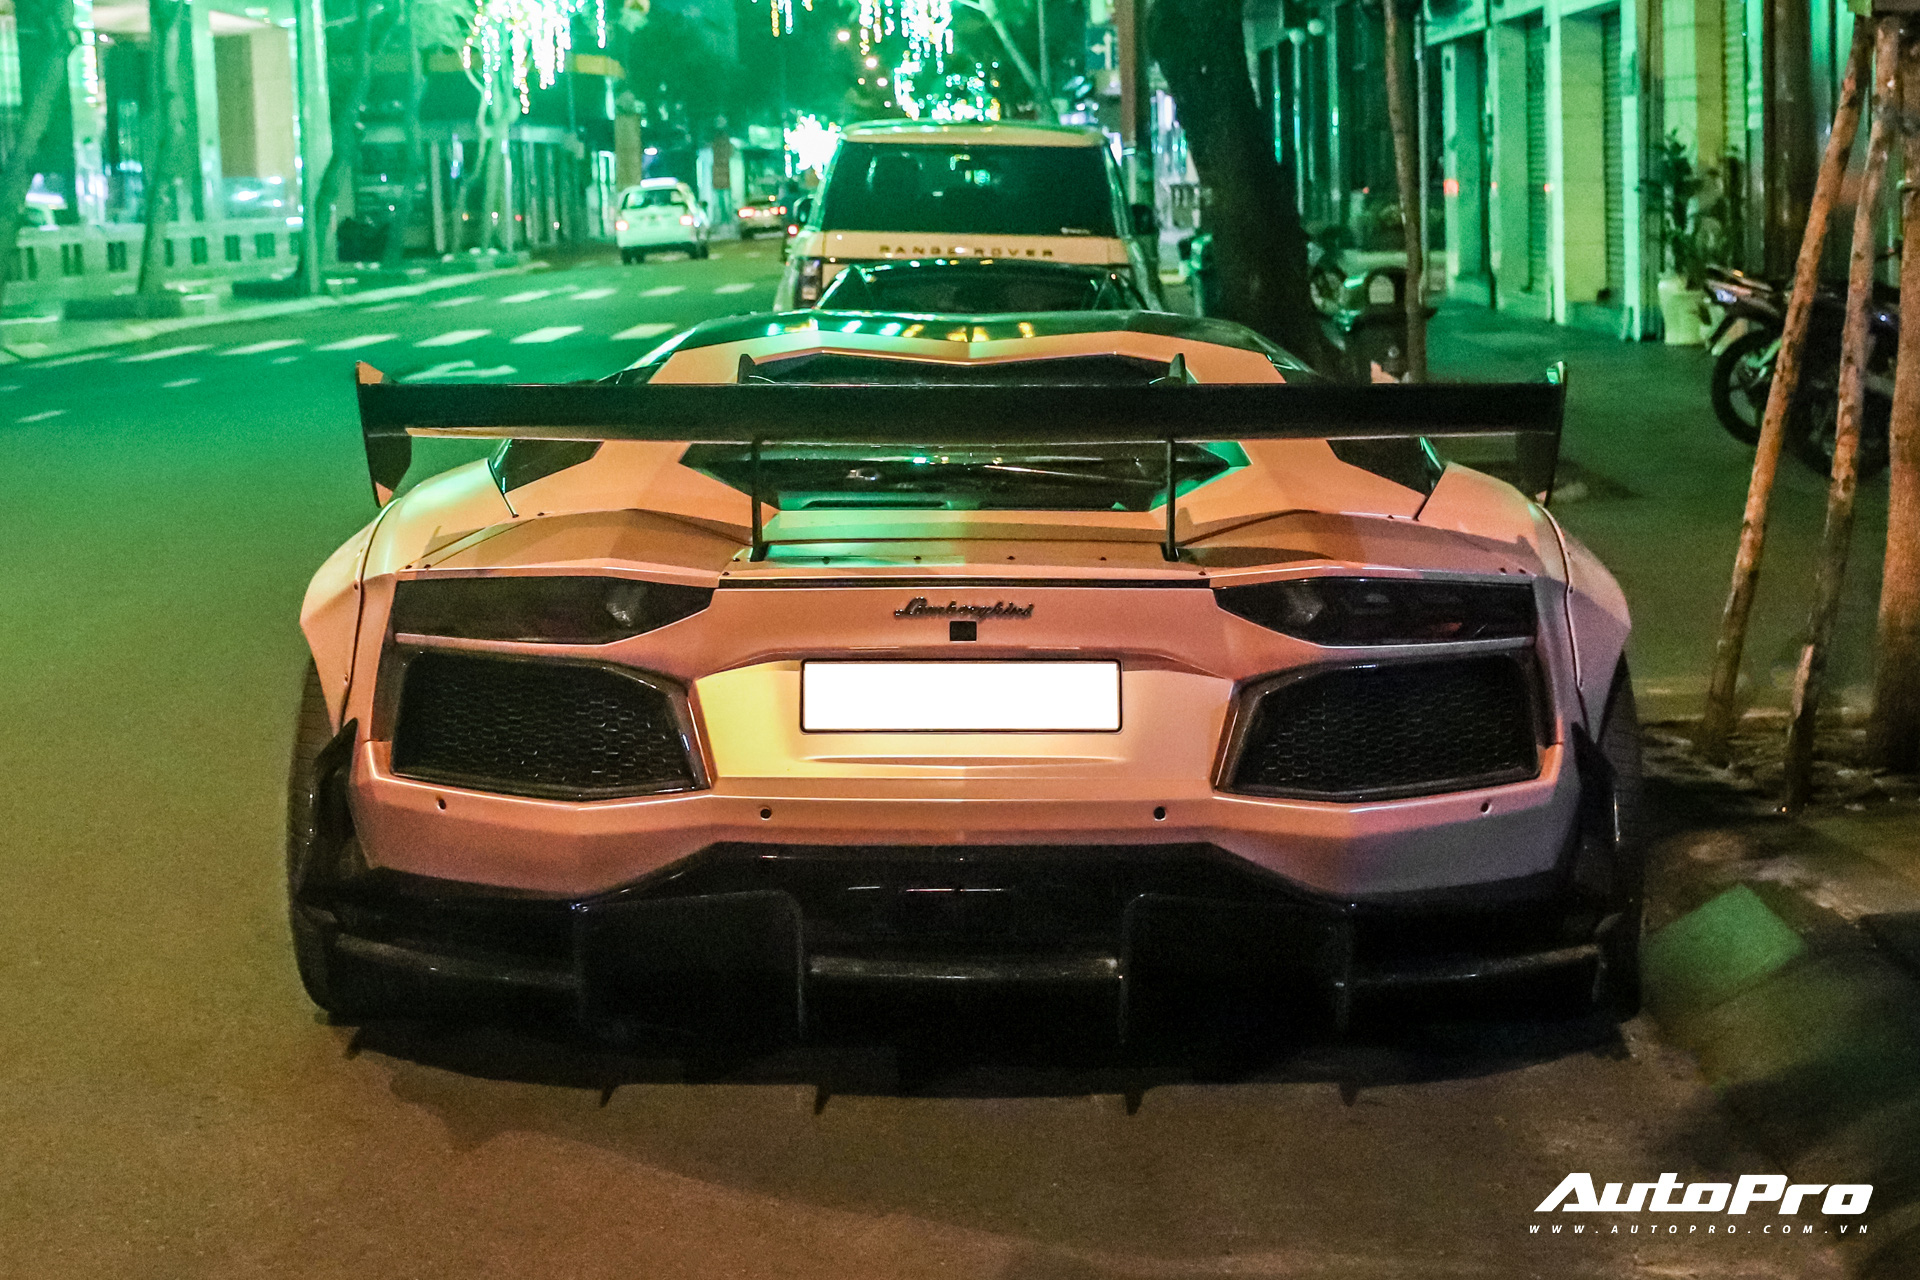 Hành trình khám phá vẻ đẹp của chiếc xe Lamborghini độ này sẽ khiến bạn không thể quên. Với sức mạnh đầy ma lực từ động cơ và kiểu dáng bắt mắt như một siêu anh hùng, chiếc xe sẽ mang đến cho bạn trải nghiệm tuyệt vời. Hãy cùng xem bức ảnh và trải nghiệm những giây phút hồi hộp cùng chiếc xe này.